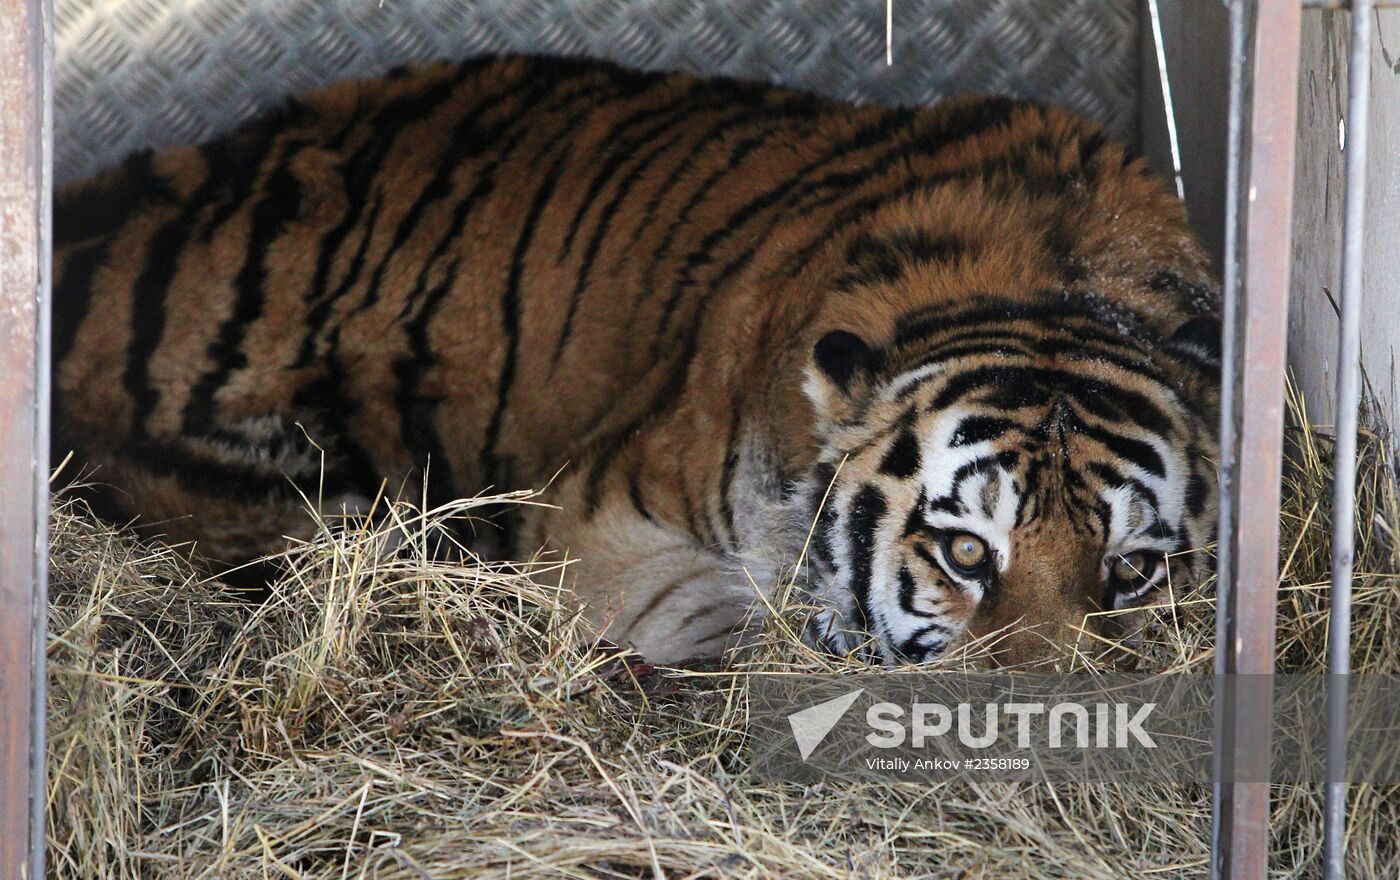 Saved Amur Tiger brought to Safari Park